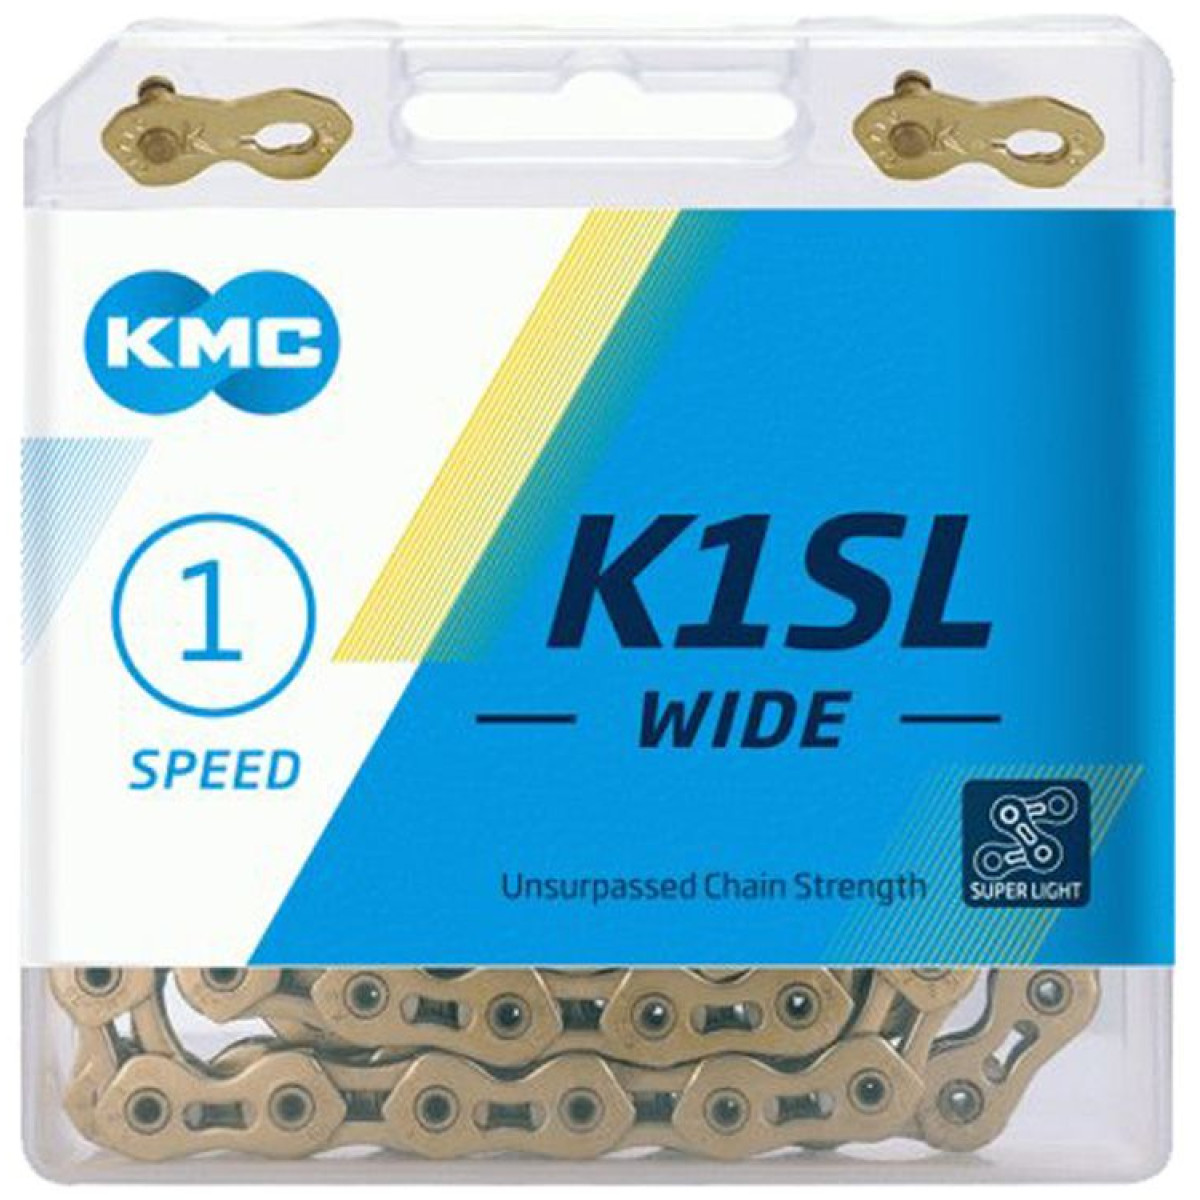 KMC K1SL Wide Ti-N grandinė / 1 pavaros / Gold